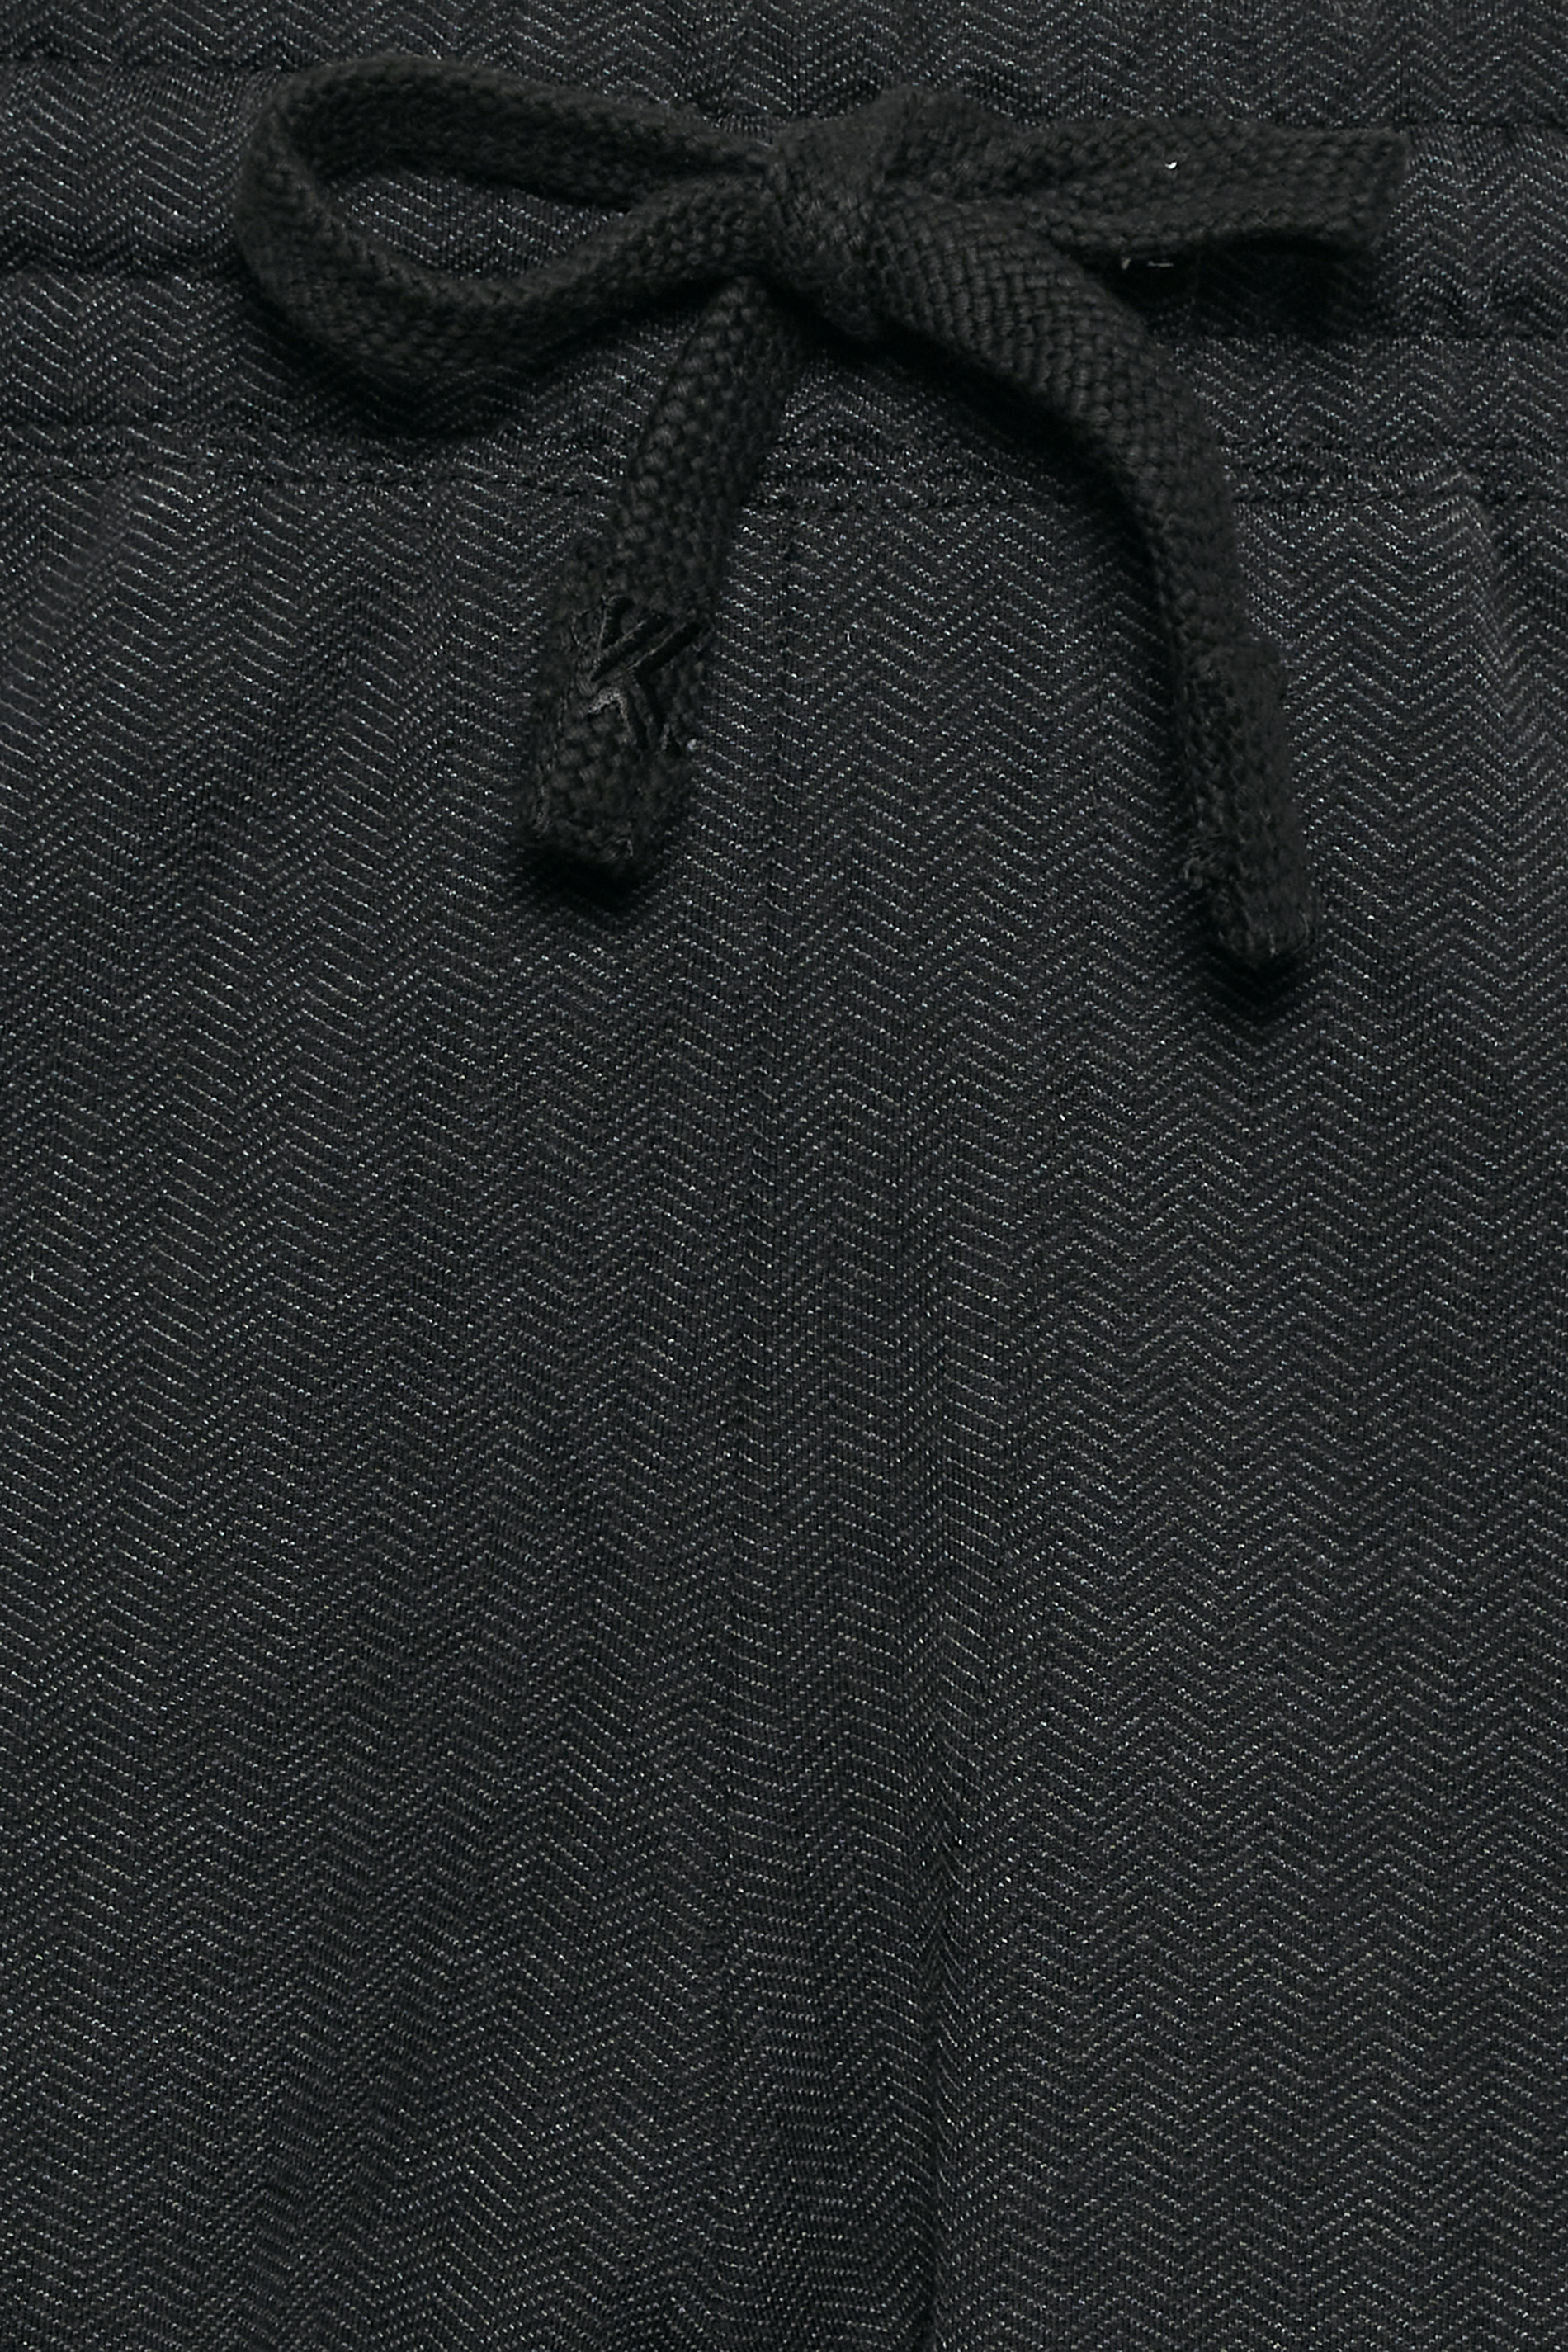 KAM Big & Tall Charcoal Grey Herringbone Shorts | BadRhino  3